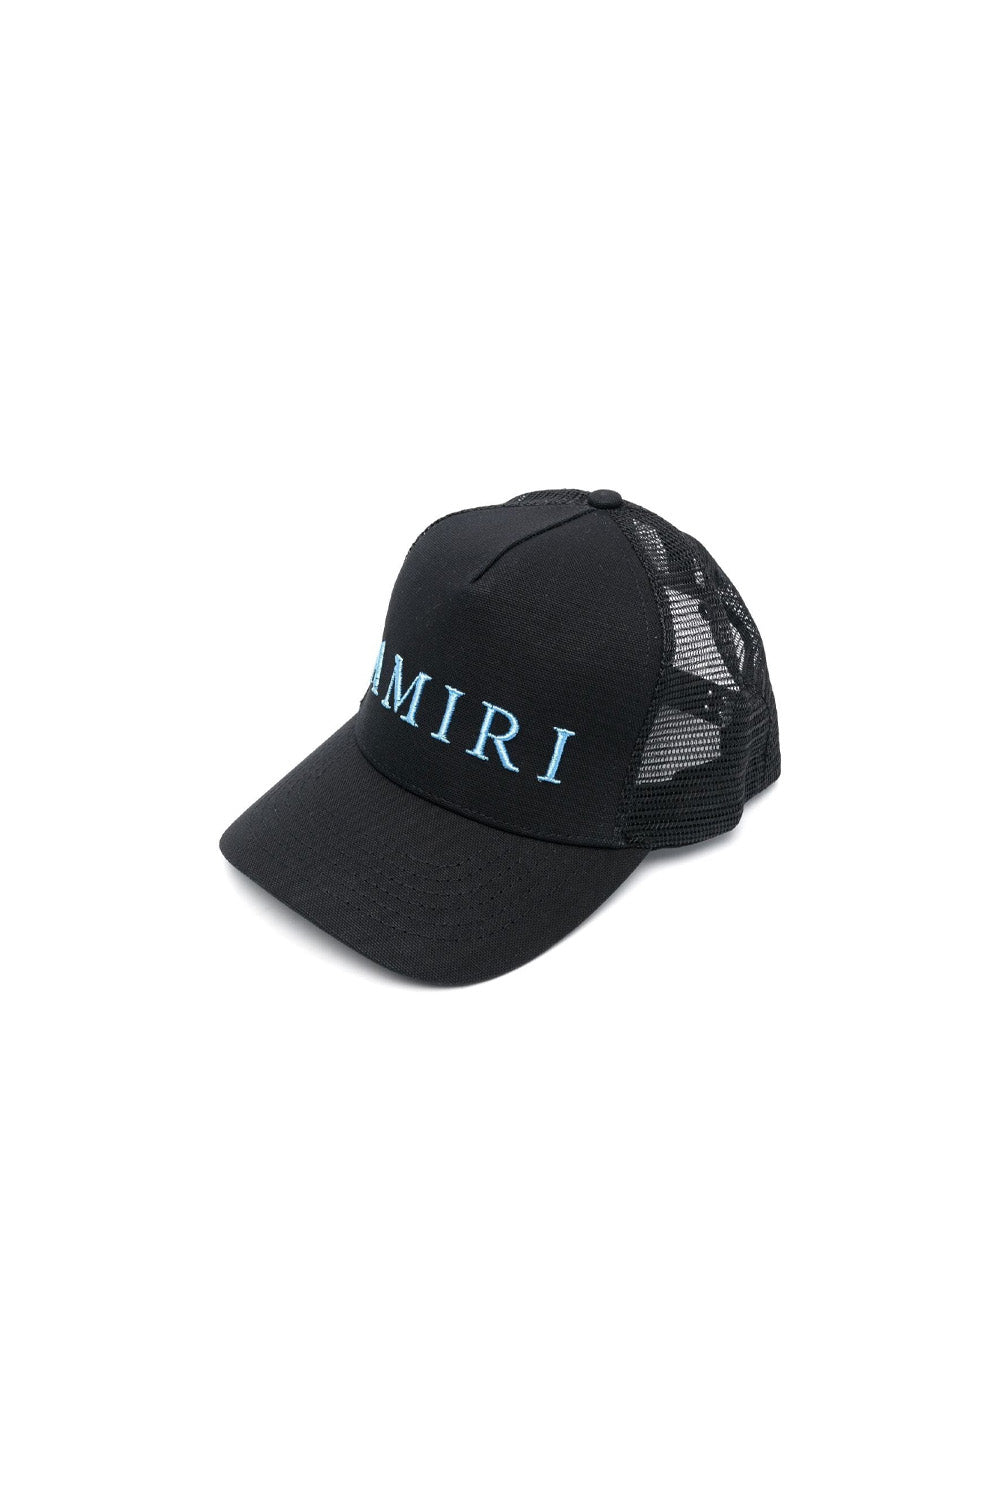 AMIRI logo-embroidered trucker hat